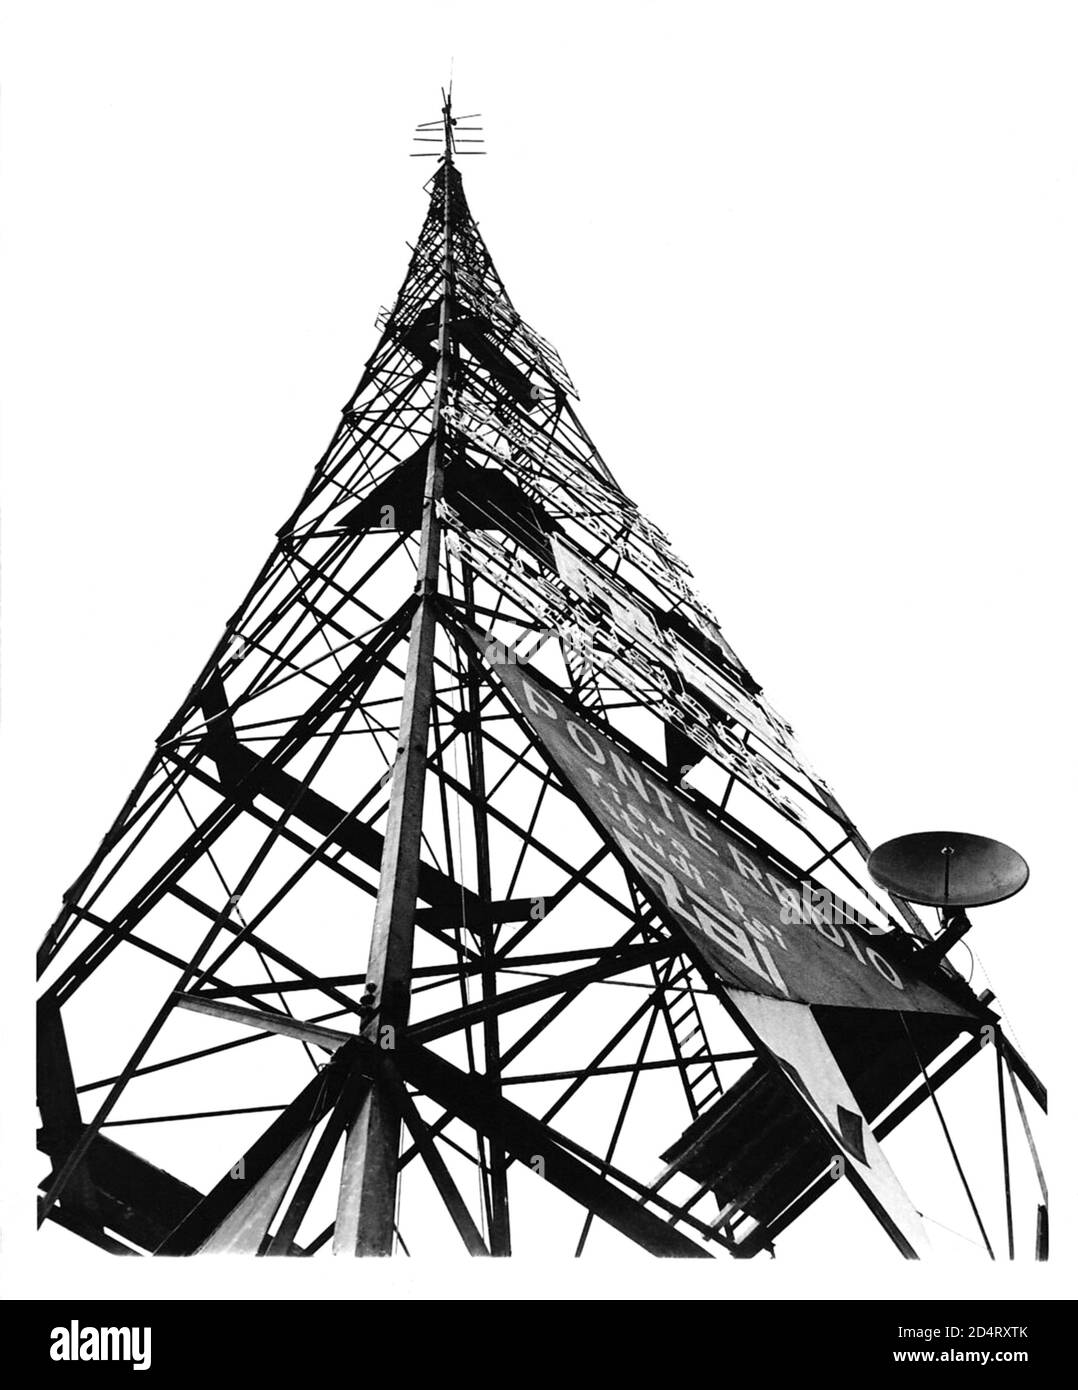 1952 , avril, MILAN , ITALIE : UNE antenne de transmission de télévision flambant neuve pointe vers le ciel dans la ville de Milan, comme la première station de télévision d'Italie est mise en service. Les représentations vidéo, temporairement limitées à la région de Milan, sont la principale caractéristique du salon de l'Industrie ( FIERA CAMPIONARIA DI MILANO ). Les émissions devraient être appréciées dans tout le pays d'ici 1954 . - TELEVISIONE - TELEVISION - MILANO - BROADCAST - RADIOTELEVISIONE ITALIANA - RAI - R.A.I. - radio Audizioni Italiane - ITALIA - ANNI CINQUANTA - 1950 - années 50 - '50 --- Archivio GBB Banque D'Images